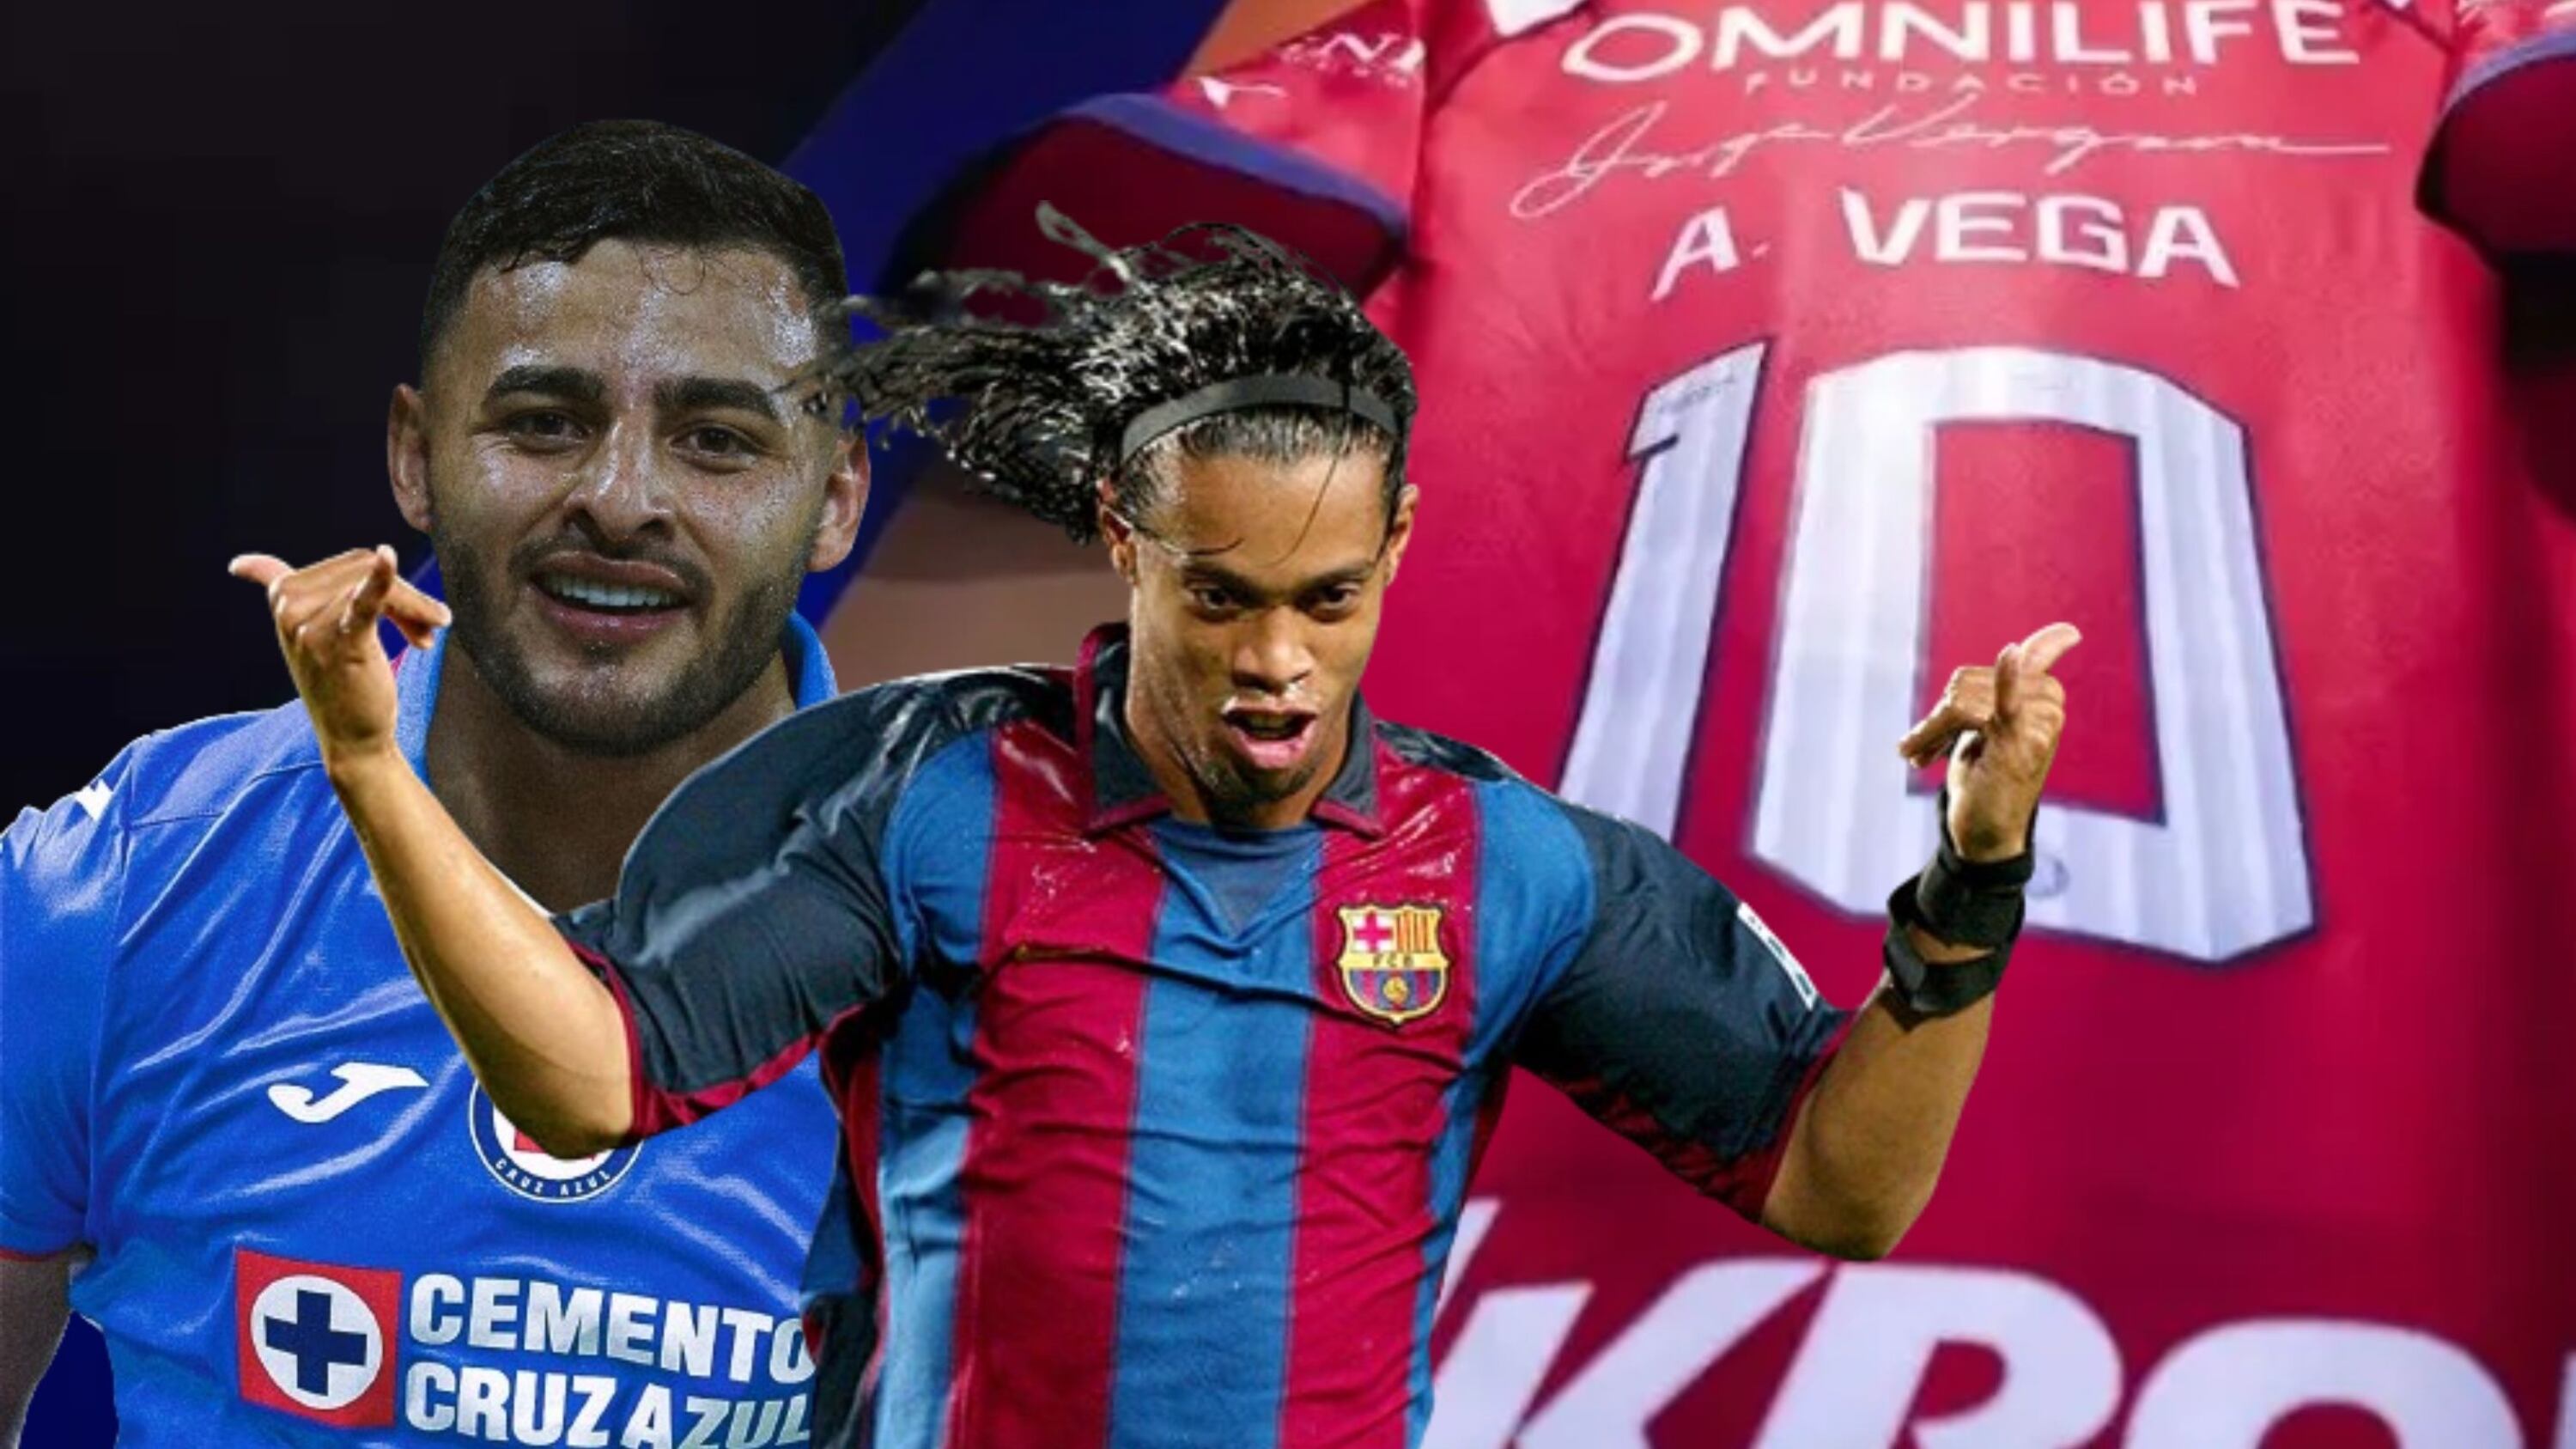 Se fue Vega, Chivas ya encontró a su nuevo 10, Barcelona preguntó por él